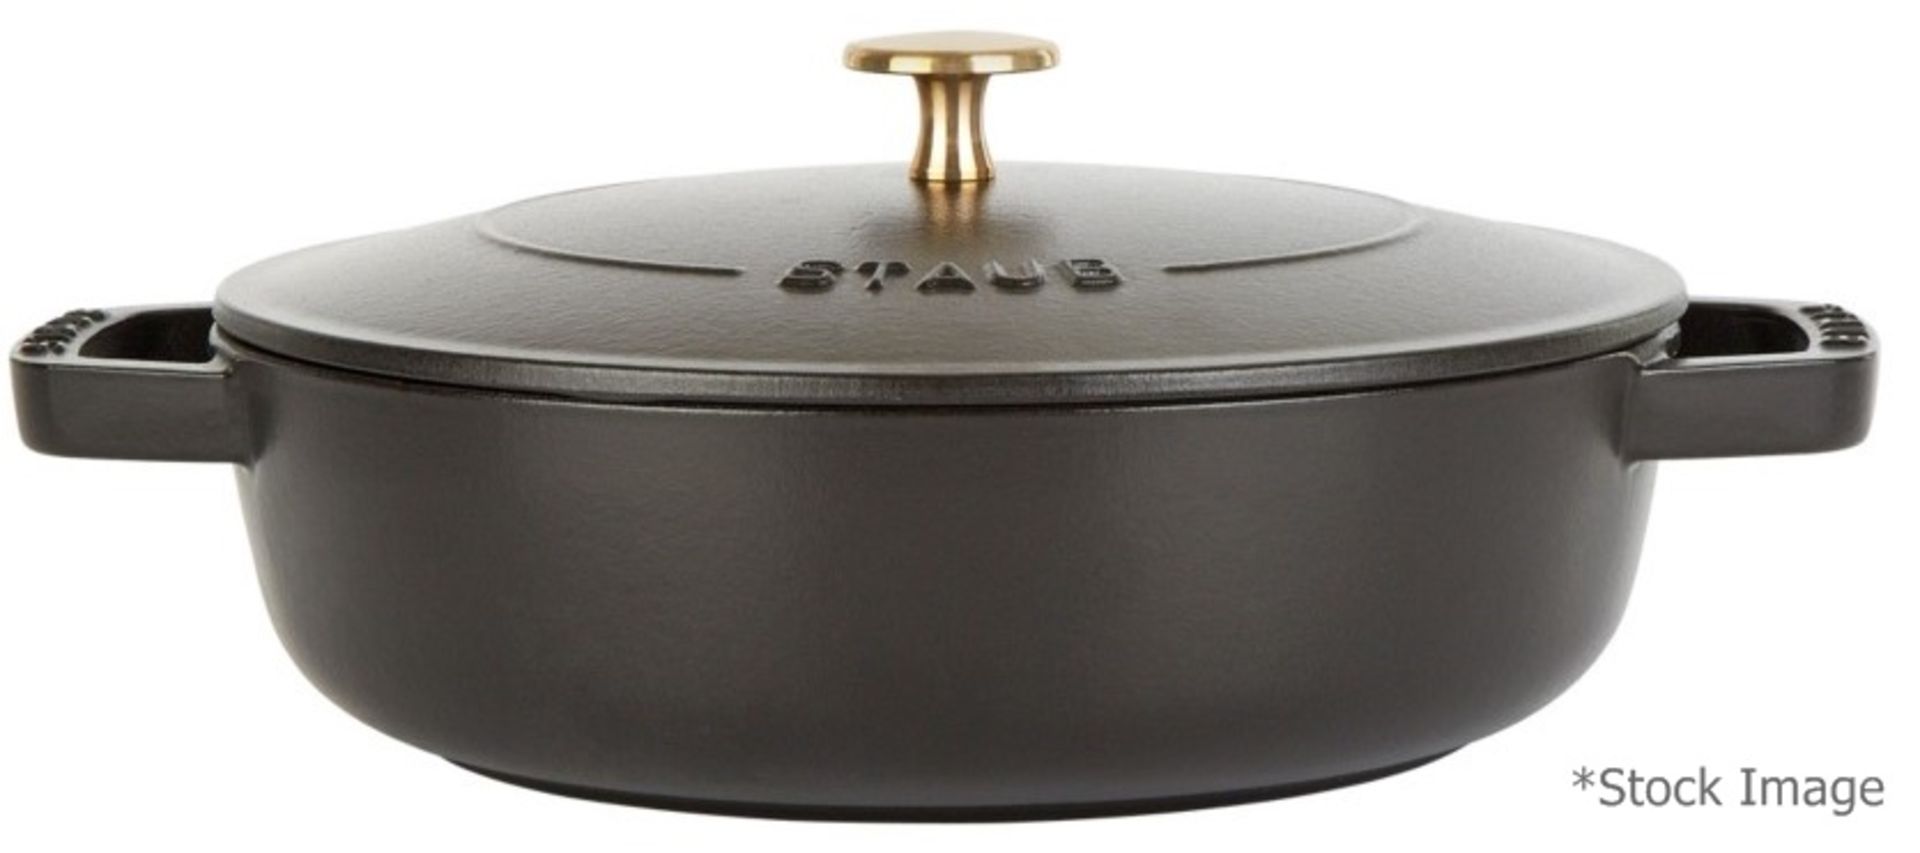 1 x STAUB Black Round Chistera Braiser Sauté Pan (24cm) - Original Price £199.00 - Unused Boxed